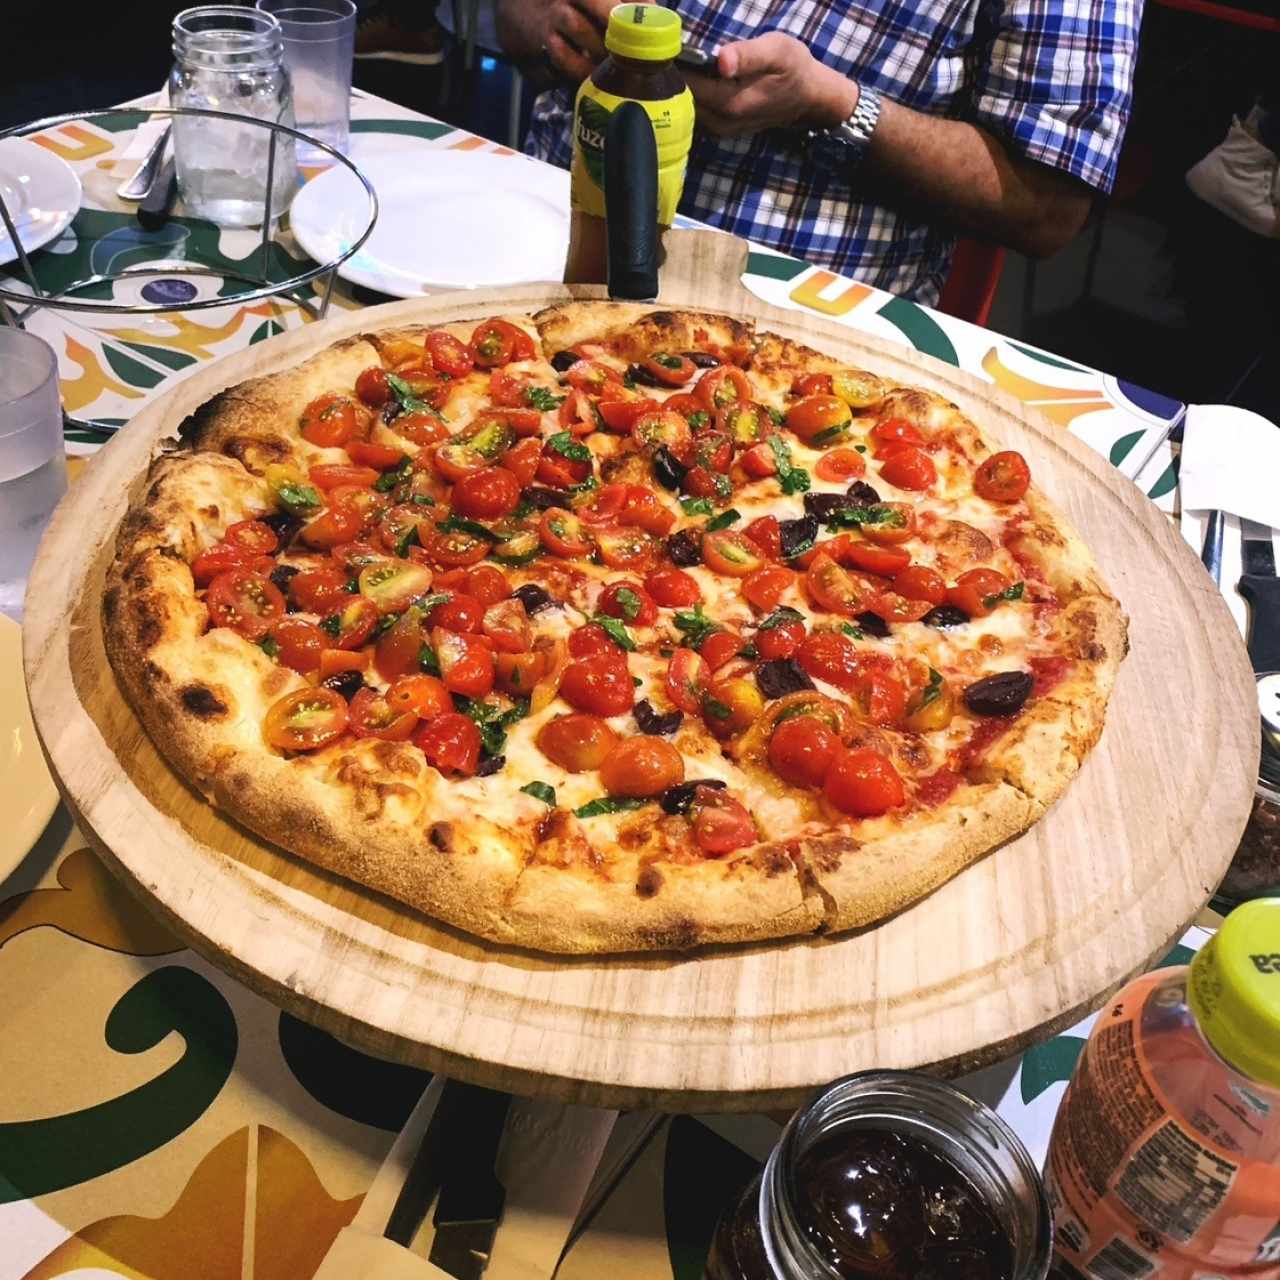 Pizzas Gourmet - Ajo Rojo,  esta pizza me encanto.  Sabores mediterraneos muy marcados. 